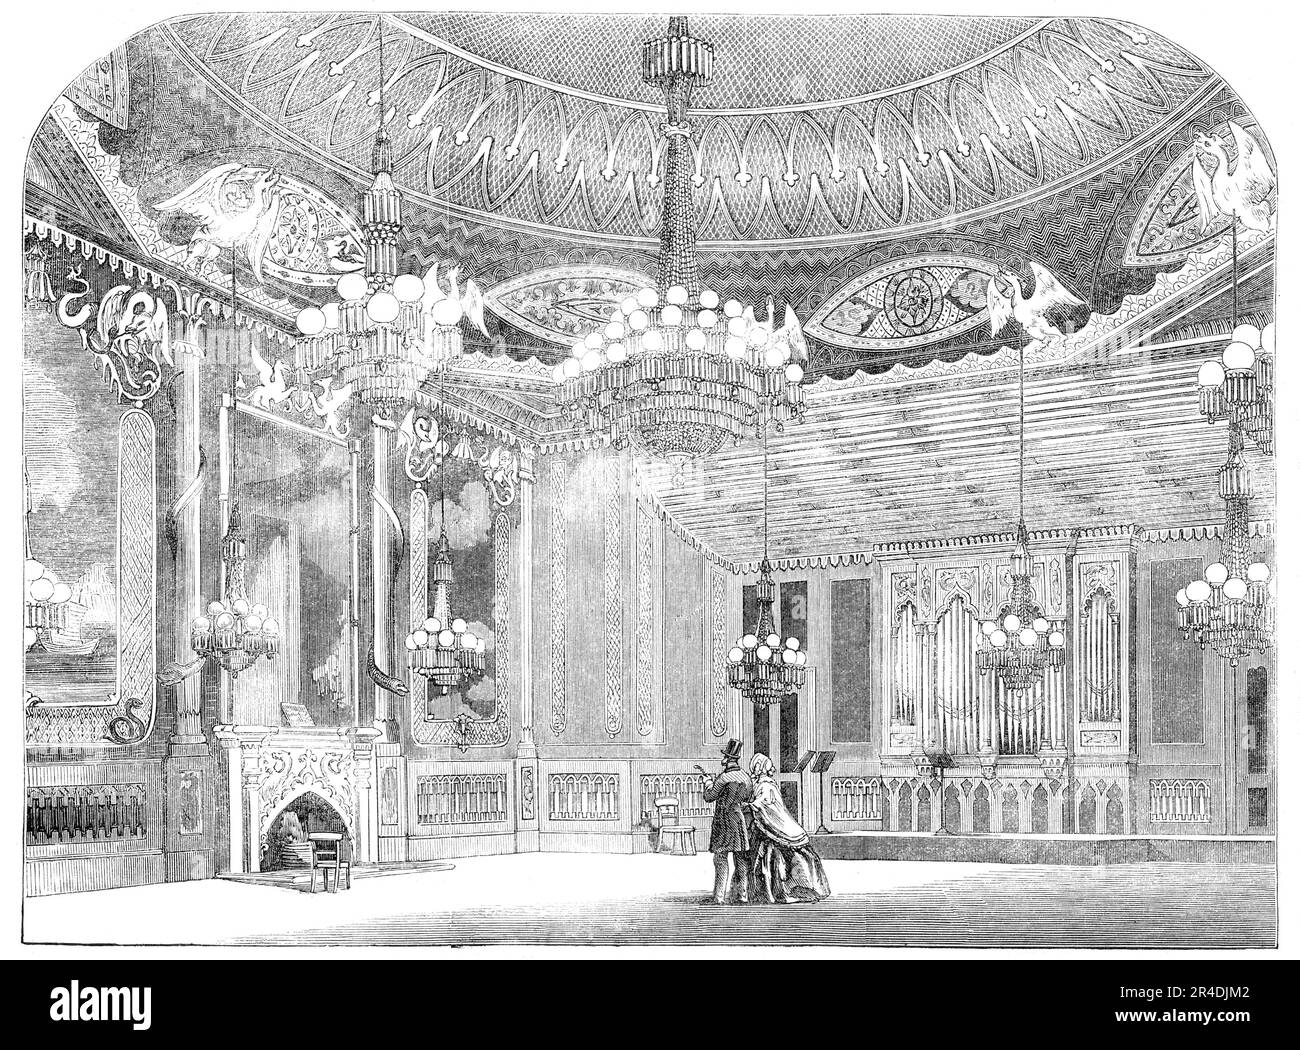 The Music-Room, nel Padiglione, Brighton, 1856. 'Uno degli appartamenti più splendidamente abbelliti è la Music Room... si erge all'altezza di 41 metri, ed è sormontato da una cupola di 30 metri di diametro; è riccamente dight con verde e oro, e dal centro e dal cerchio esterno sono sospese lustre per illuminare l'appartamento; il primo appeso ai draghi d'oro. Nei pannelli che fiancheggiano il pezzo di sciminiera sono due viste altamente rifinite in cina, la cui struttura è arricchita con draghi e serpenti. Sul lato nord, in una cavità, è un magnifico organo, di Lincoln - al momento di esso Foto Stock